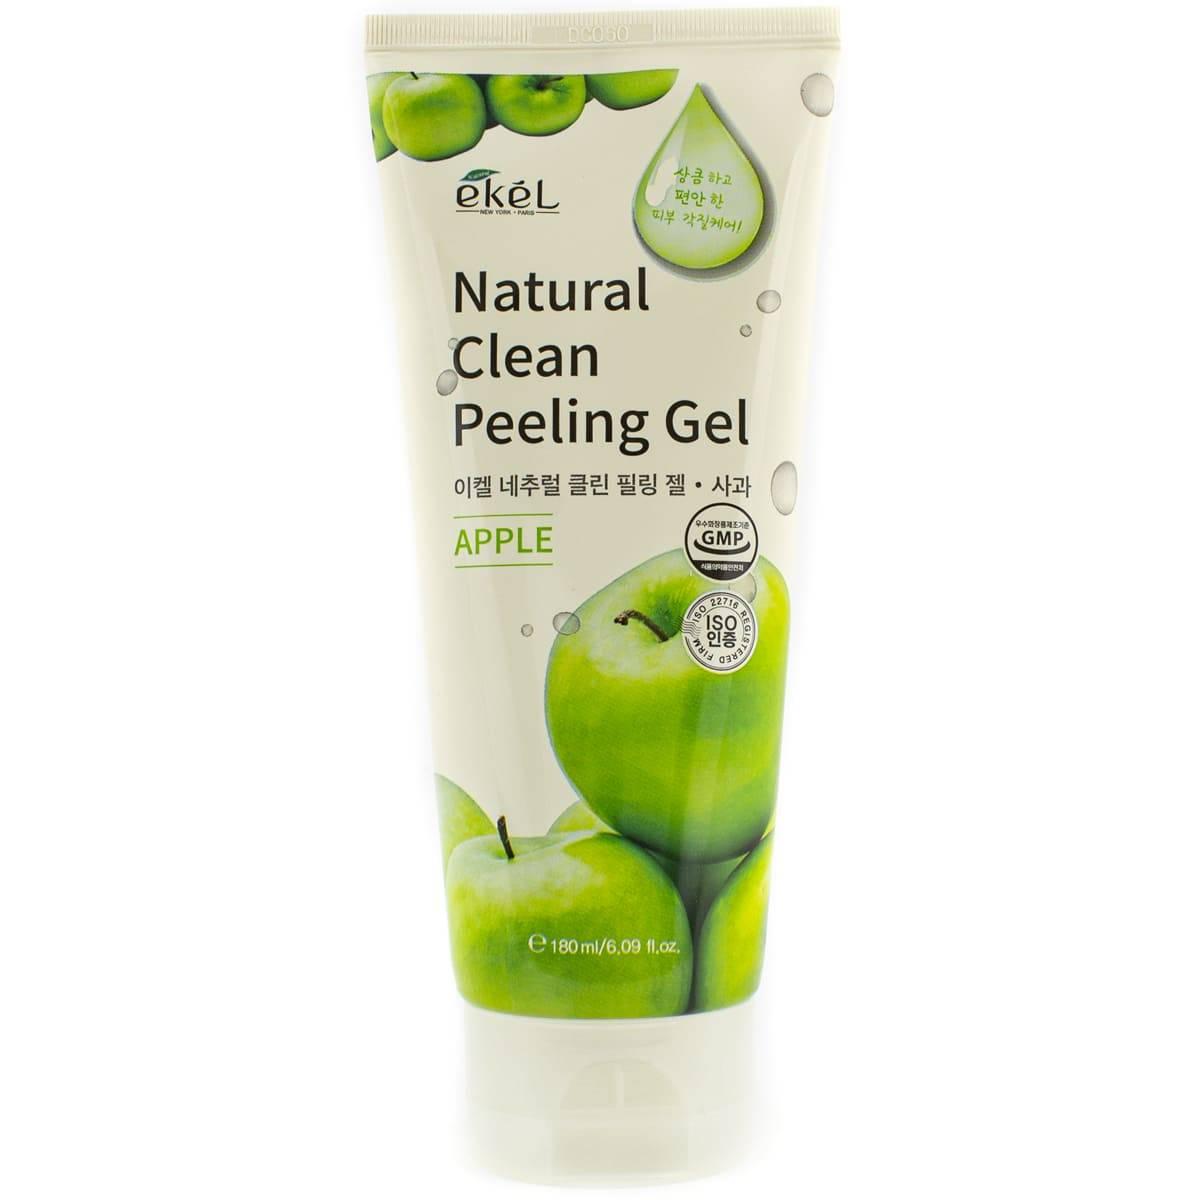 Очищающий пилинг-скатка с экстрактом зеленого яблока Apple Natural Clean Peeling Gel, Ekel 180 мл